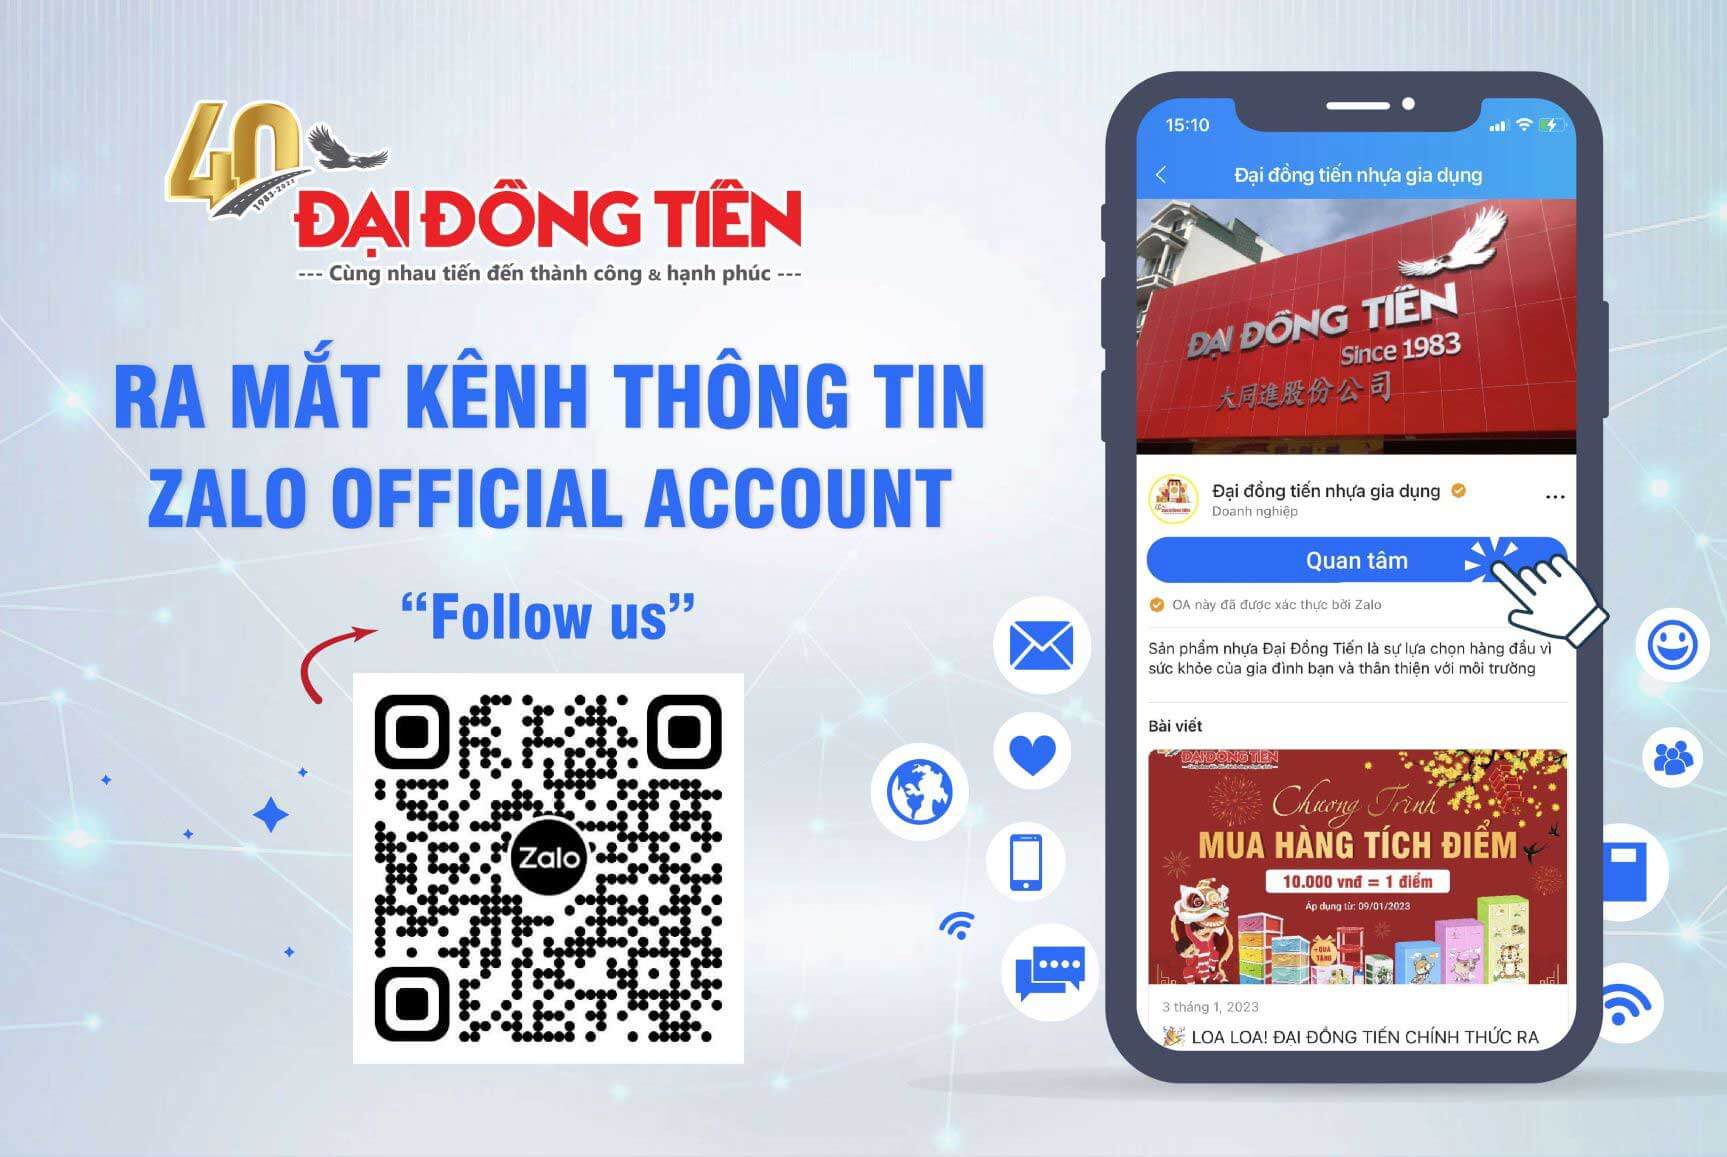 dai-dong-tien-ra-mat-kenh-thong-tin-zalo-oficial-account